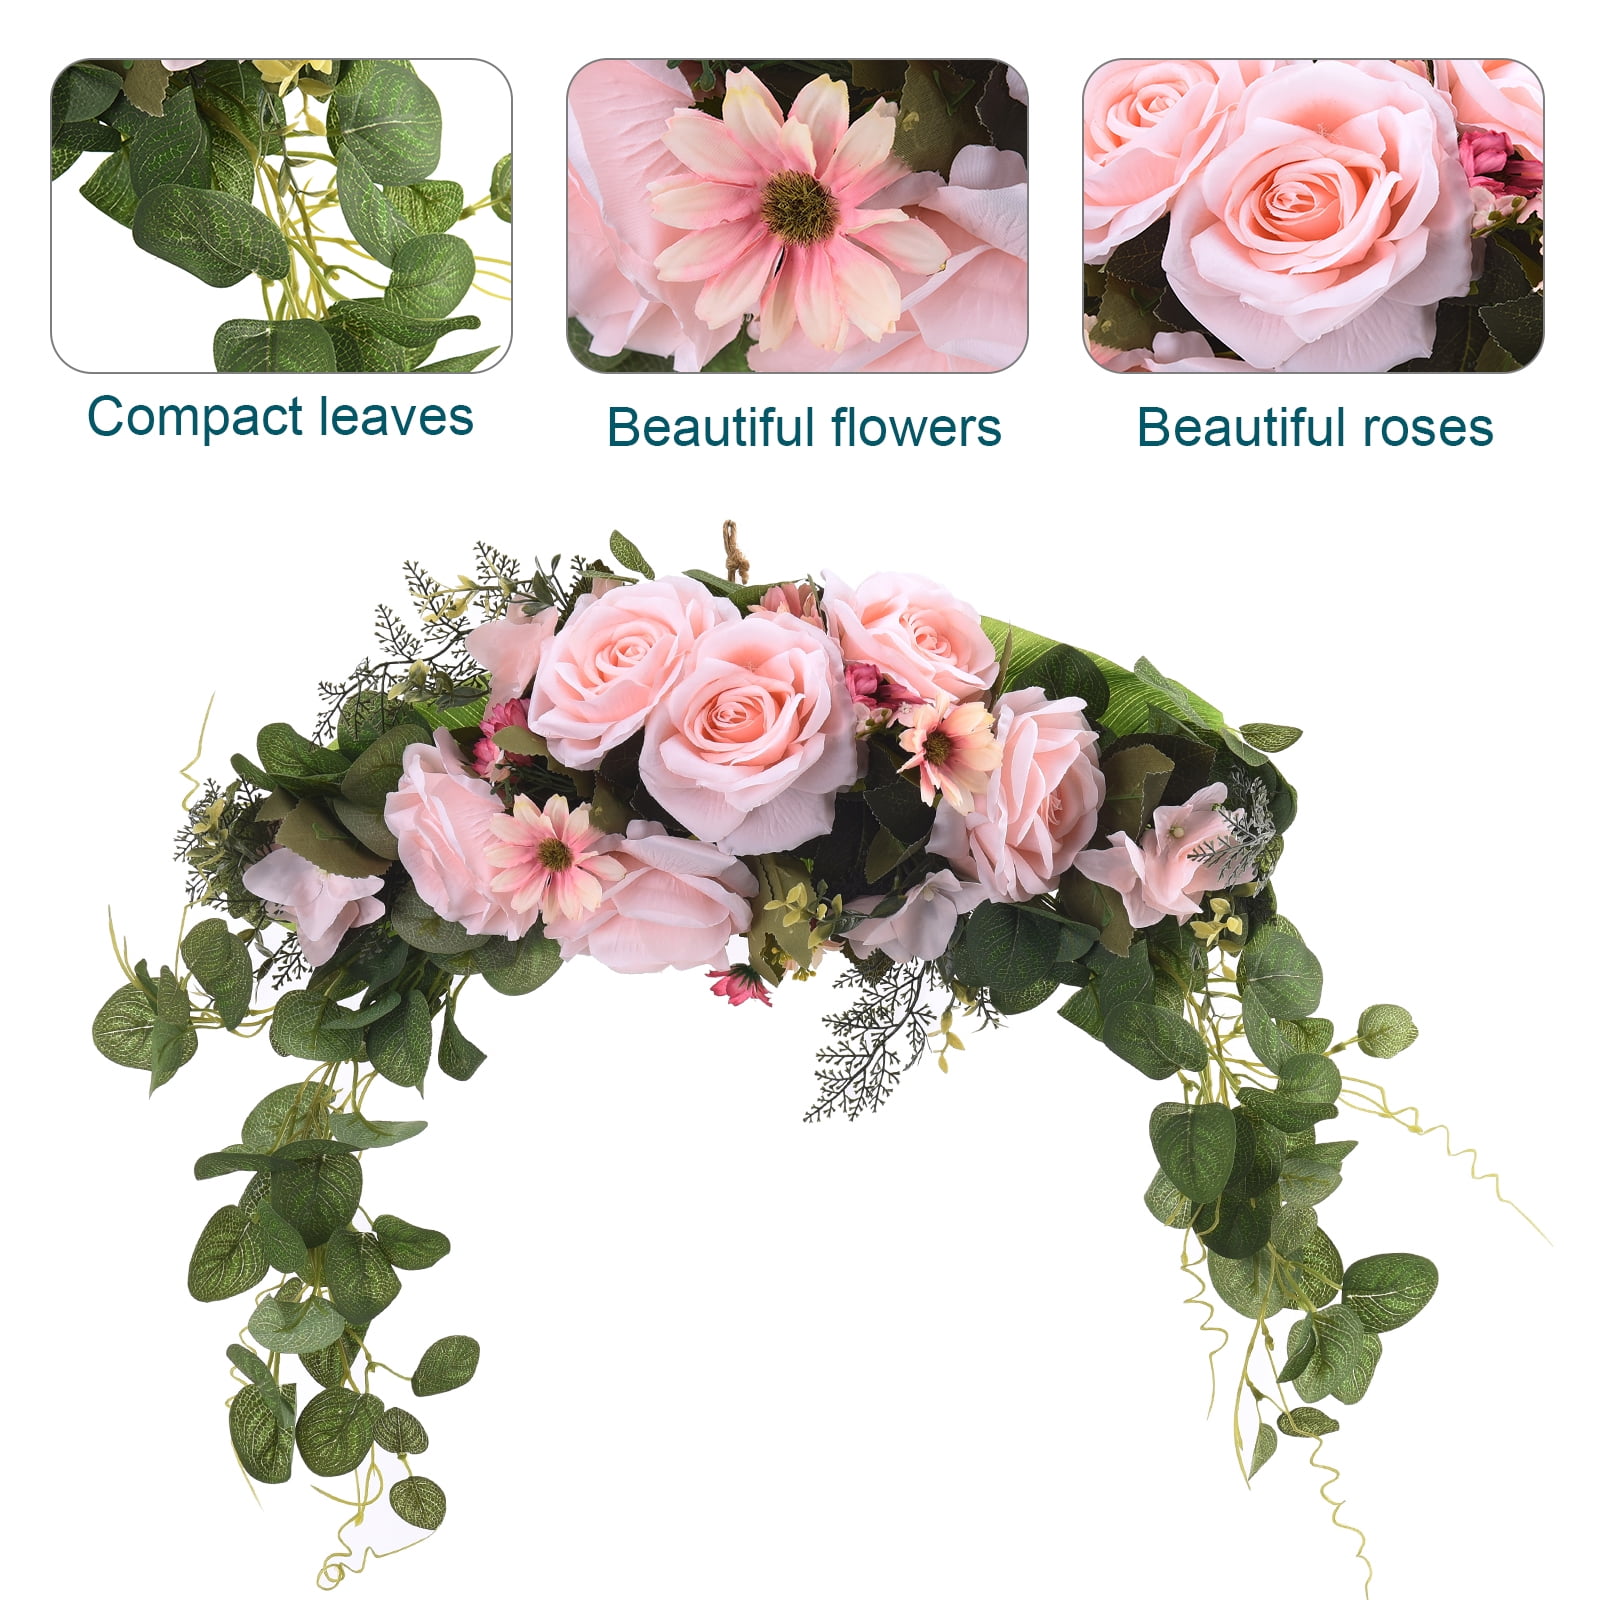 Pink Wedding Flower Garland Arrangement Artificial Flower Lintel Door Decor 